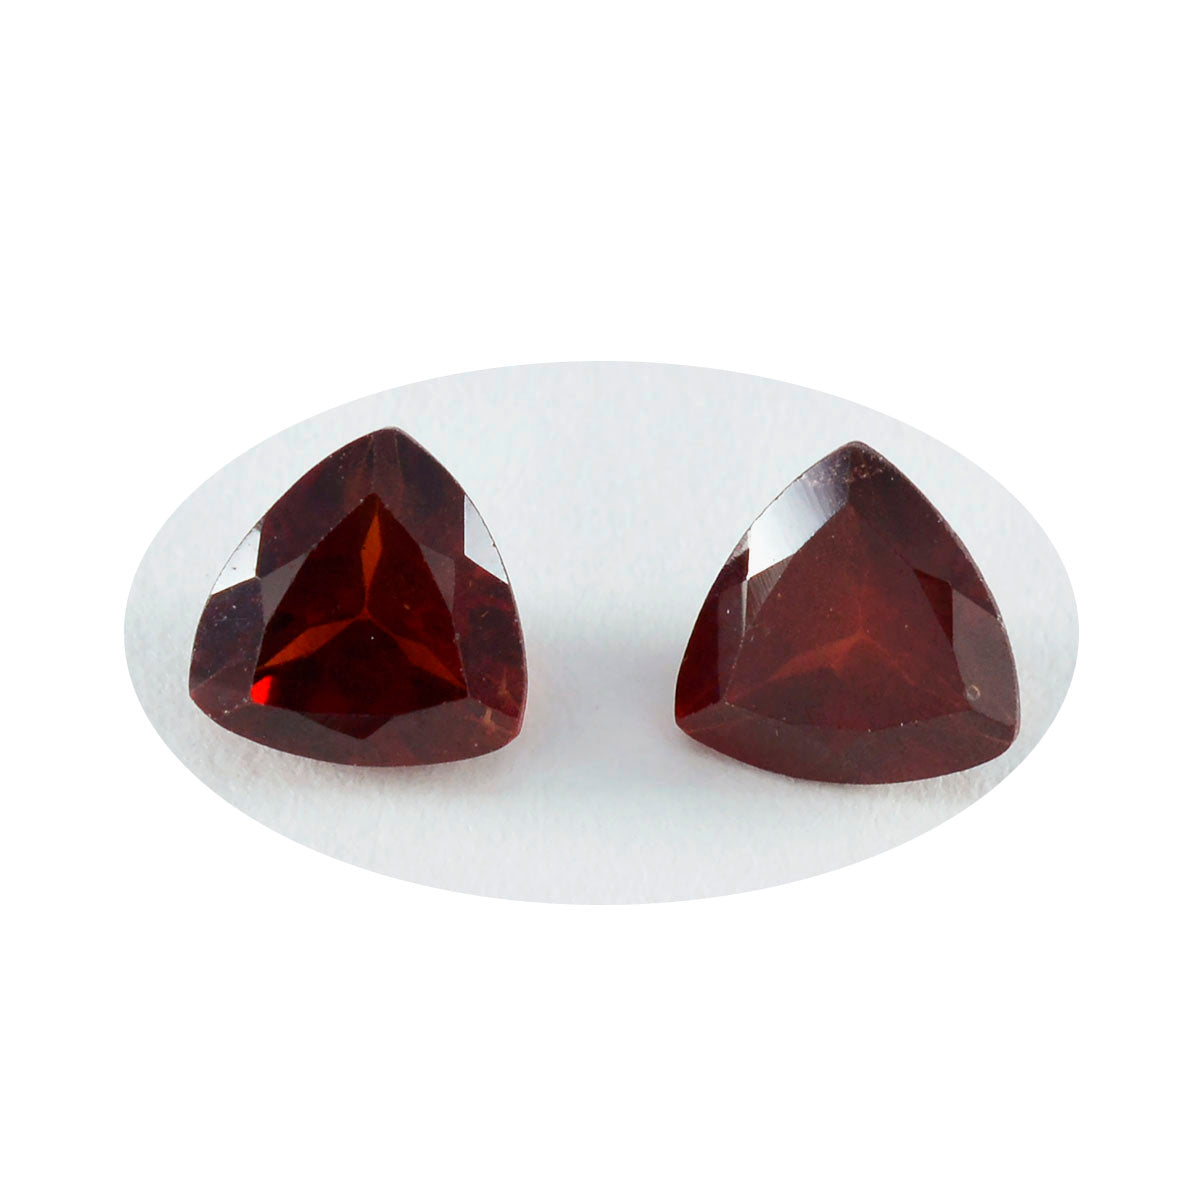 riyogems 1 шт., натуральный красный гранат, ограненный, 10x10 мм, форма триллиона, сладкий качественный драгоценный камень